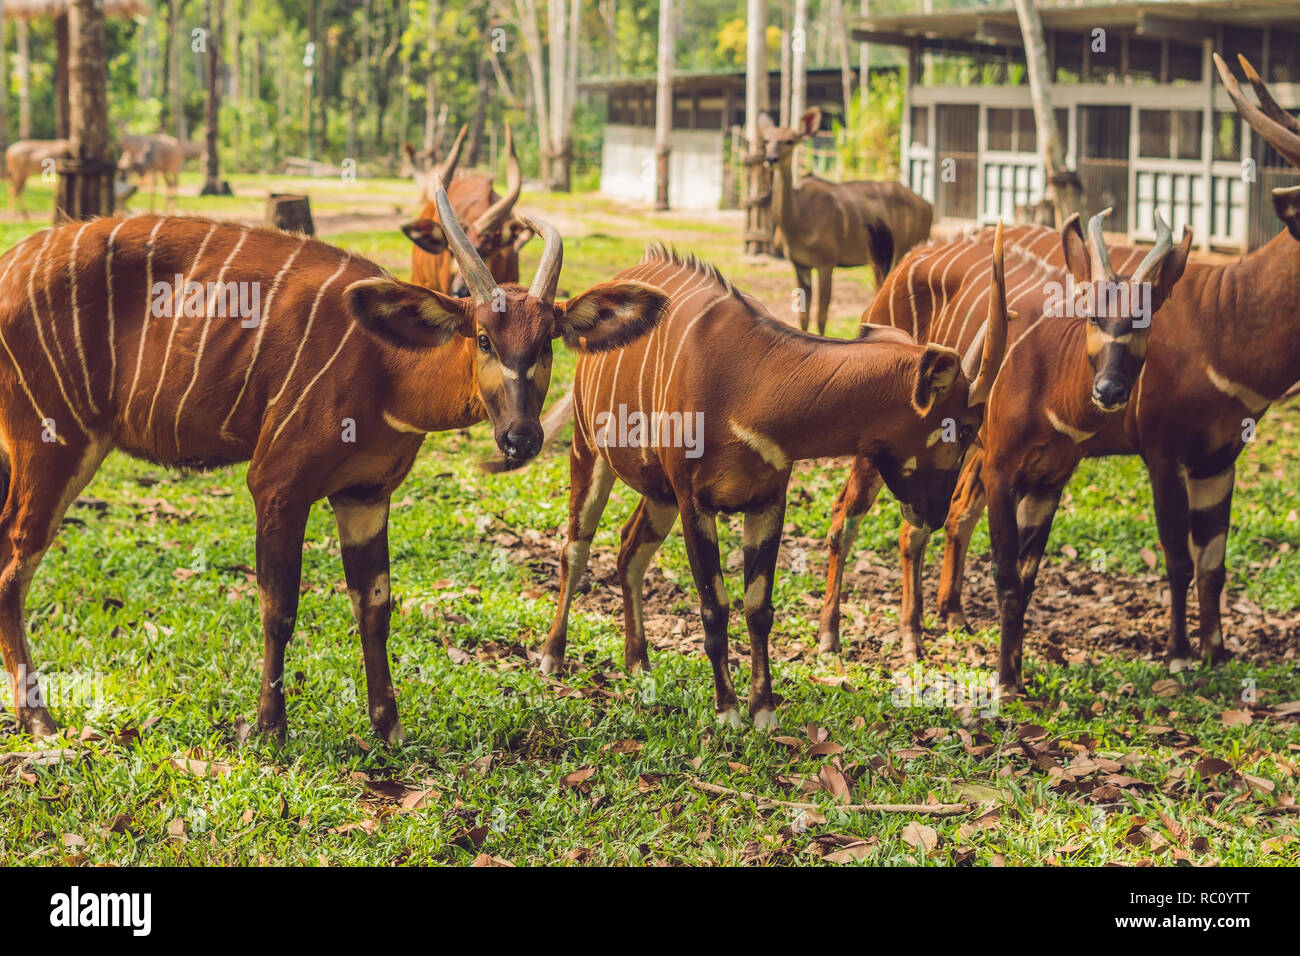 Beautiful animal - big eastern bongo antelope, extremely rare animal. Stock Photo